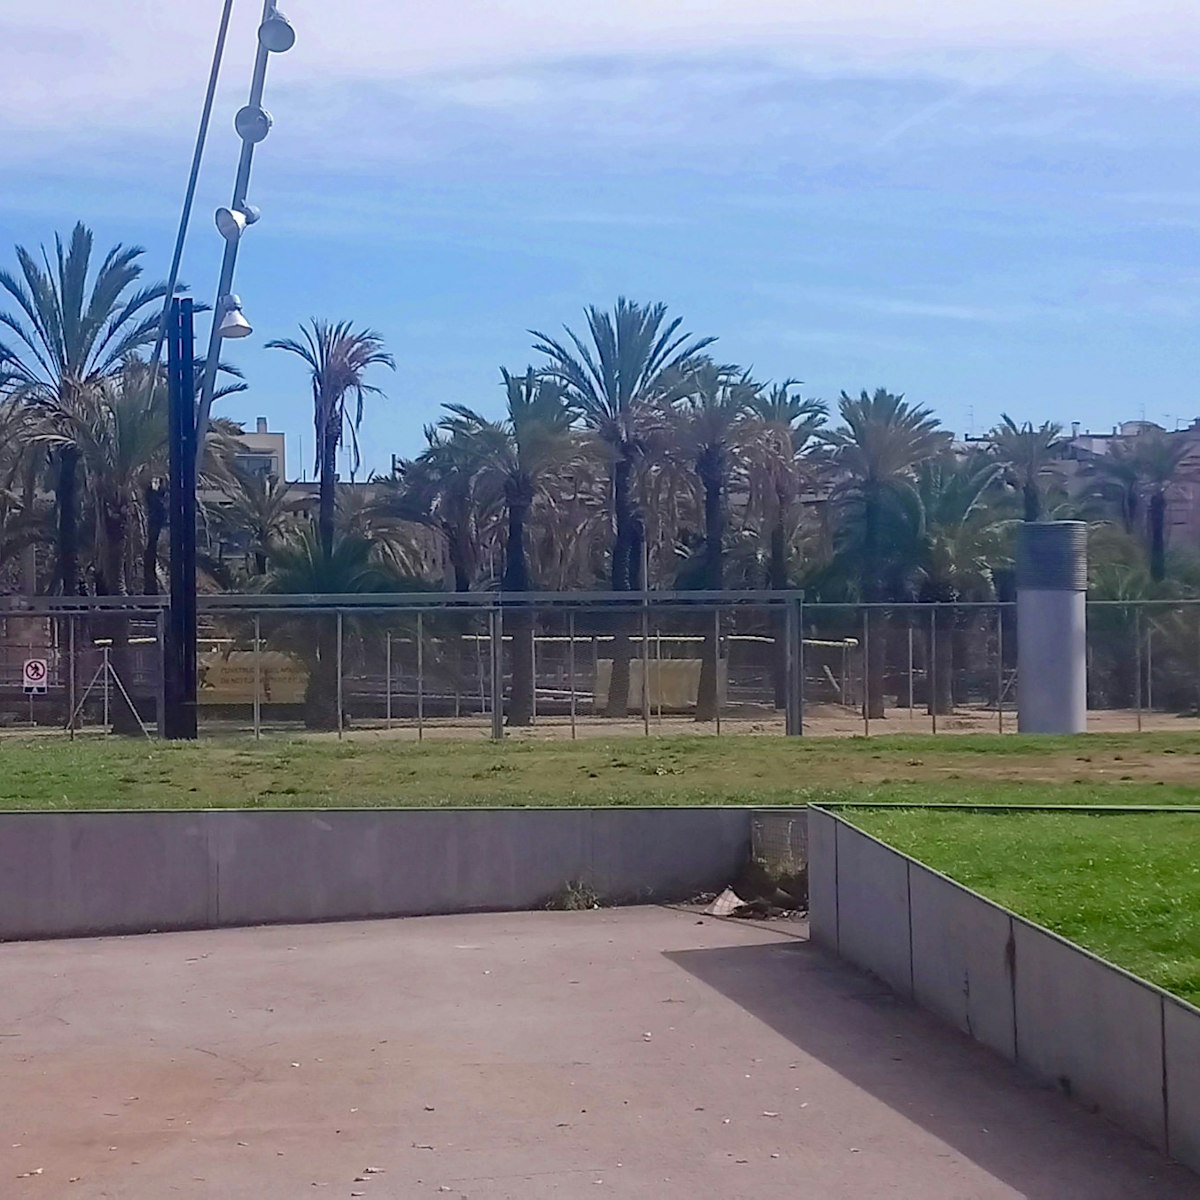 View of Parc de Joan Miró